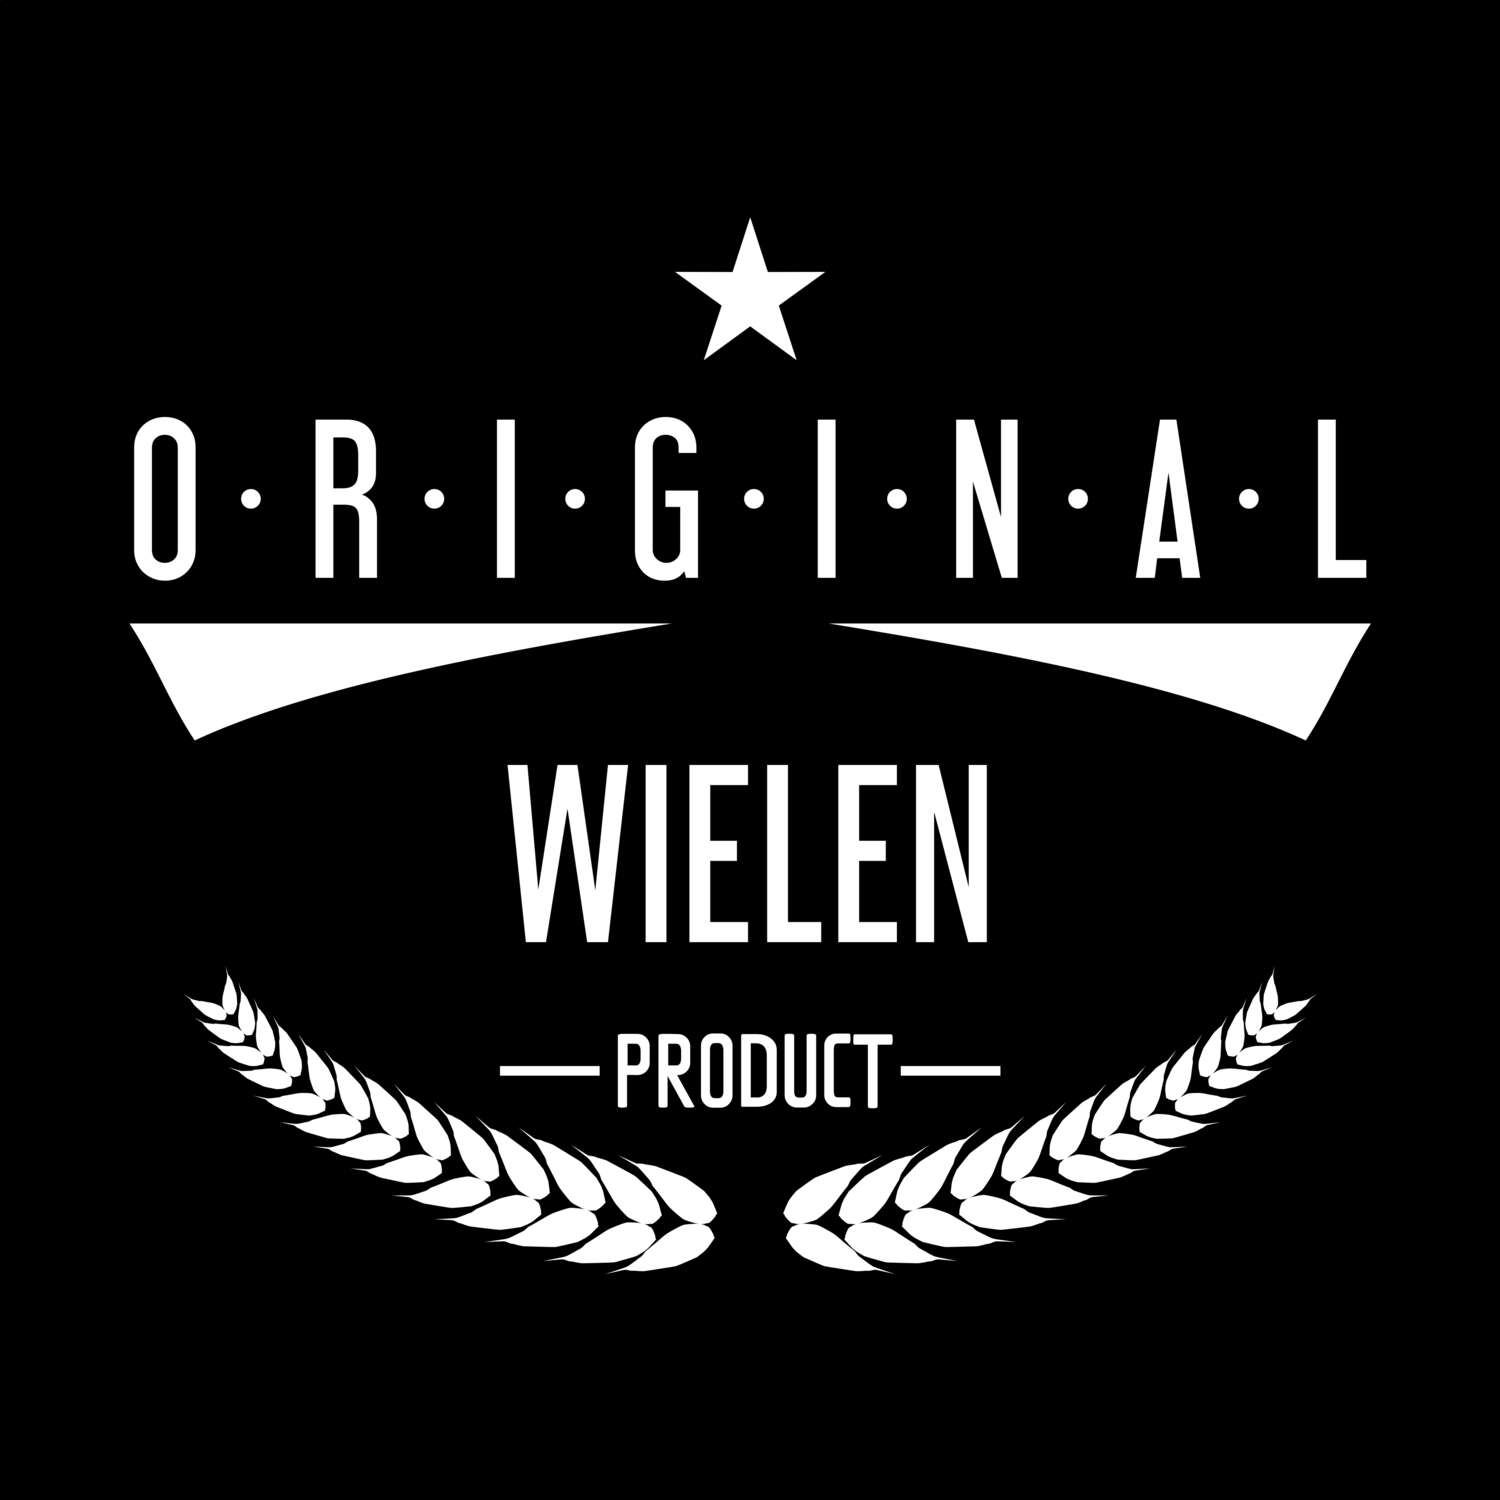 Wielen T-Shirt »Original Product«